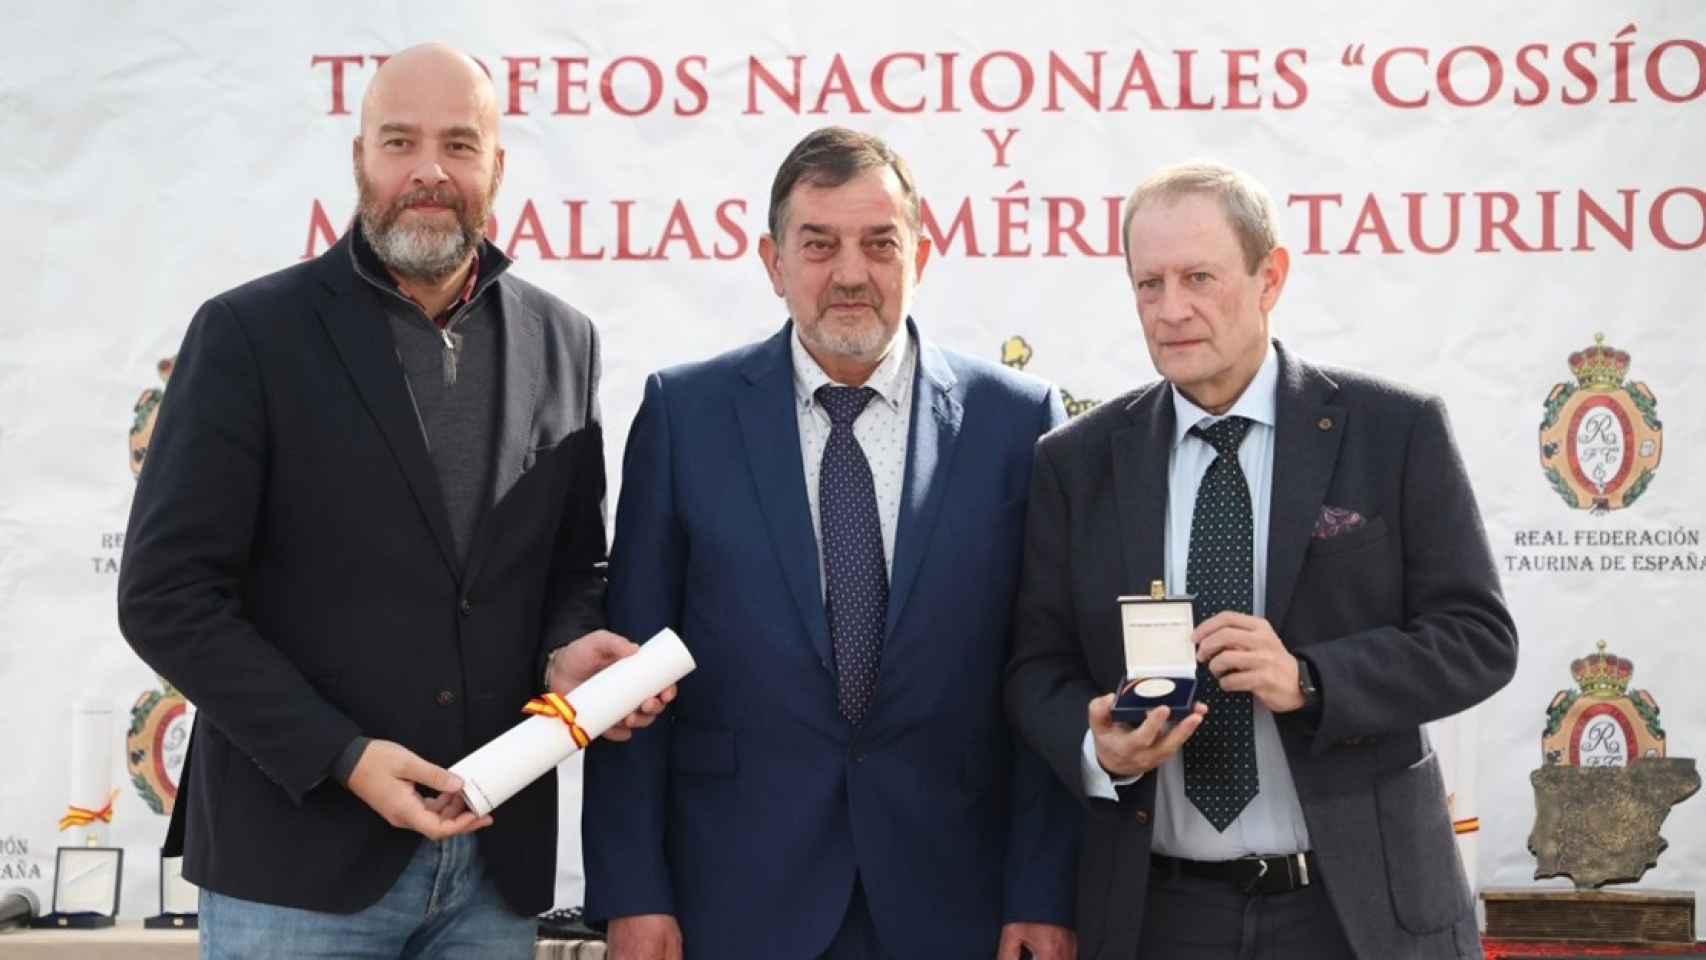 Martín Santoyo a la derecha, recogiendo el galardón junto al vicepresidente de la Real Federación y el director general del grupo televisivo, Jorge Losada, izquierda.